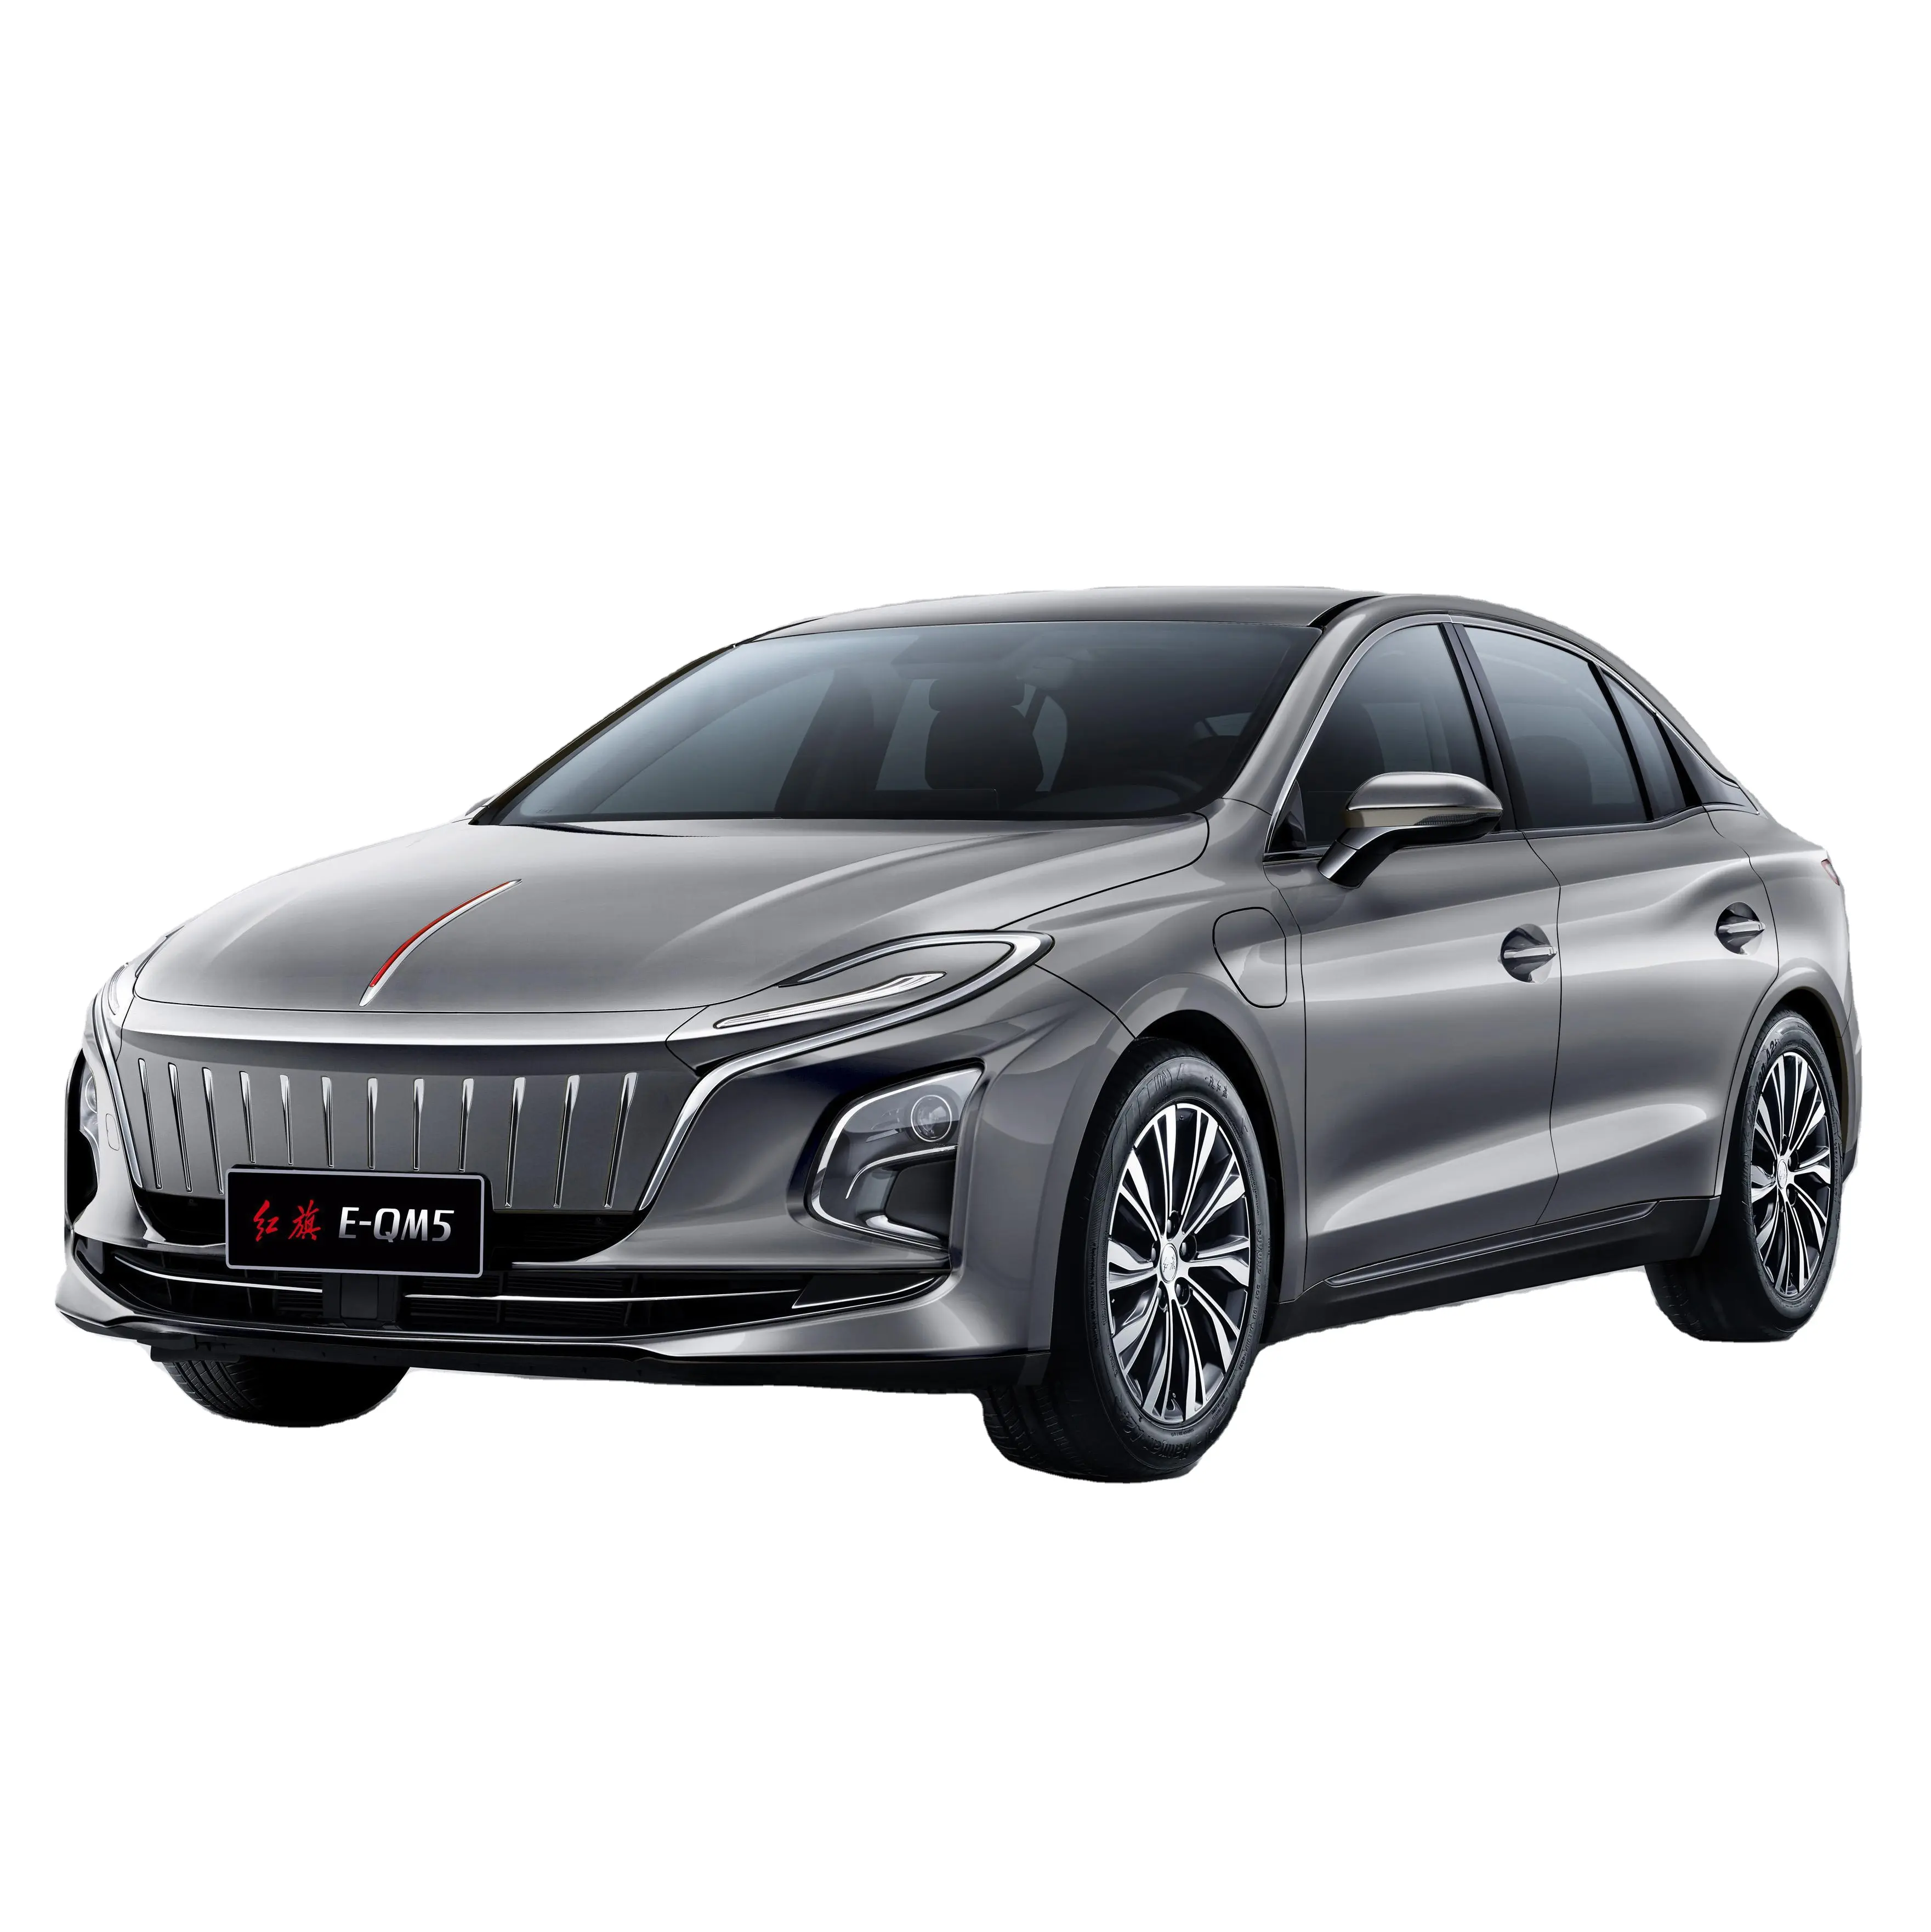 Compra superventas de vehículos eléctricos Hongqi, coches eléctricos de largo alcance sedán de 4 puertas y 5 asientos, Toyota Hilux, camioneta diésel, 4x4